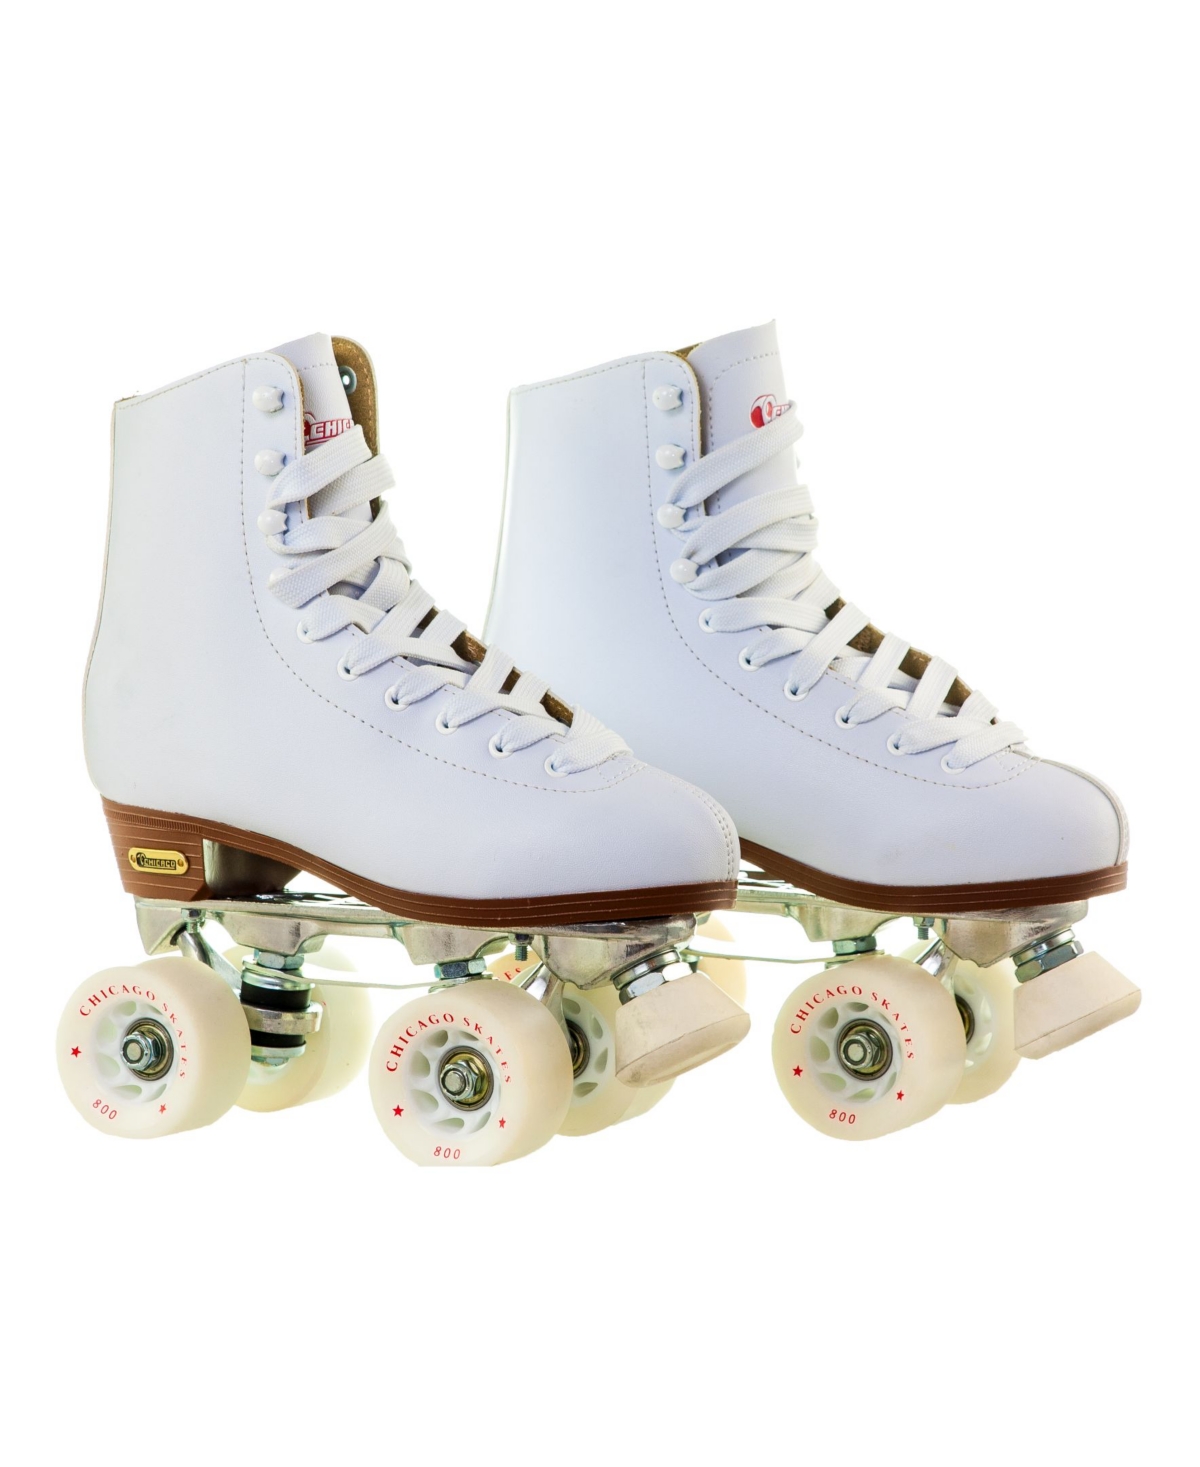 Women's Deluxe Quad Roller Rink Skates - Size 10 - White